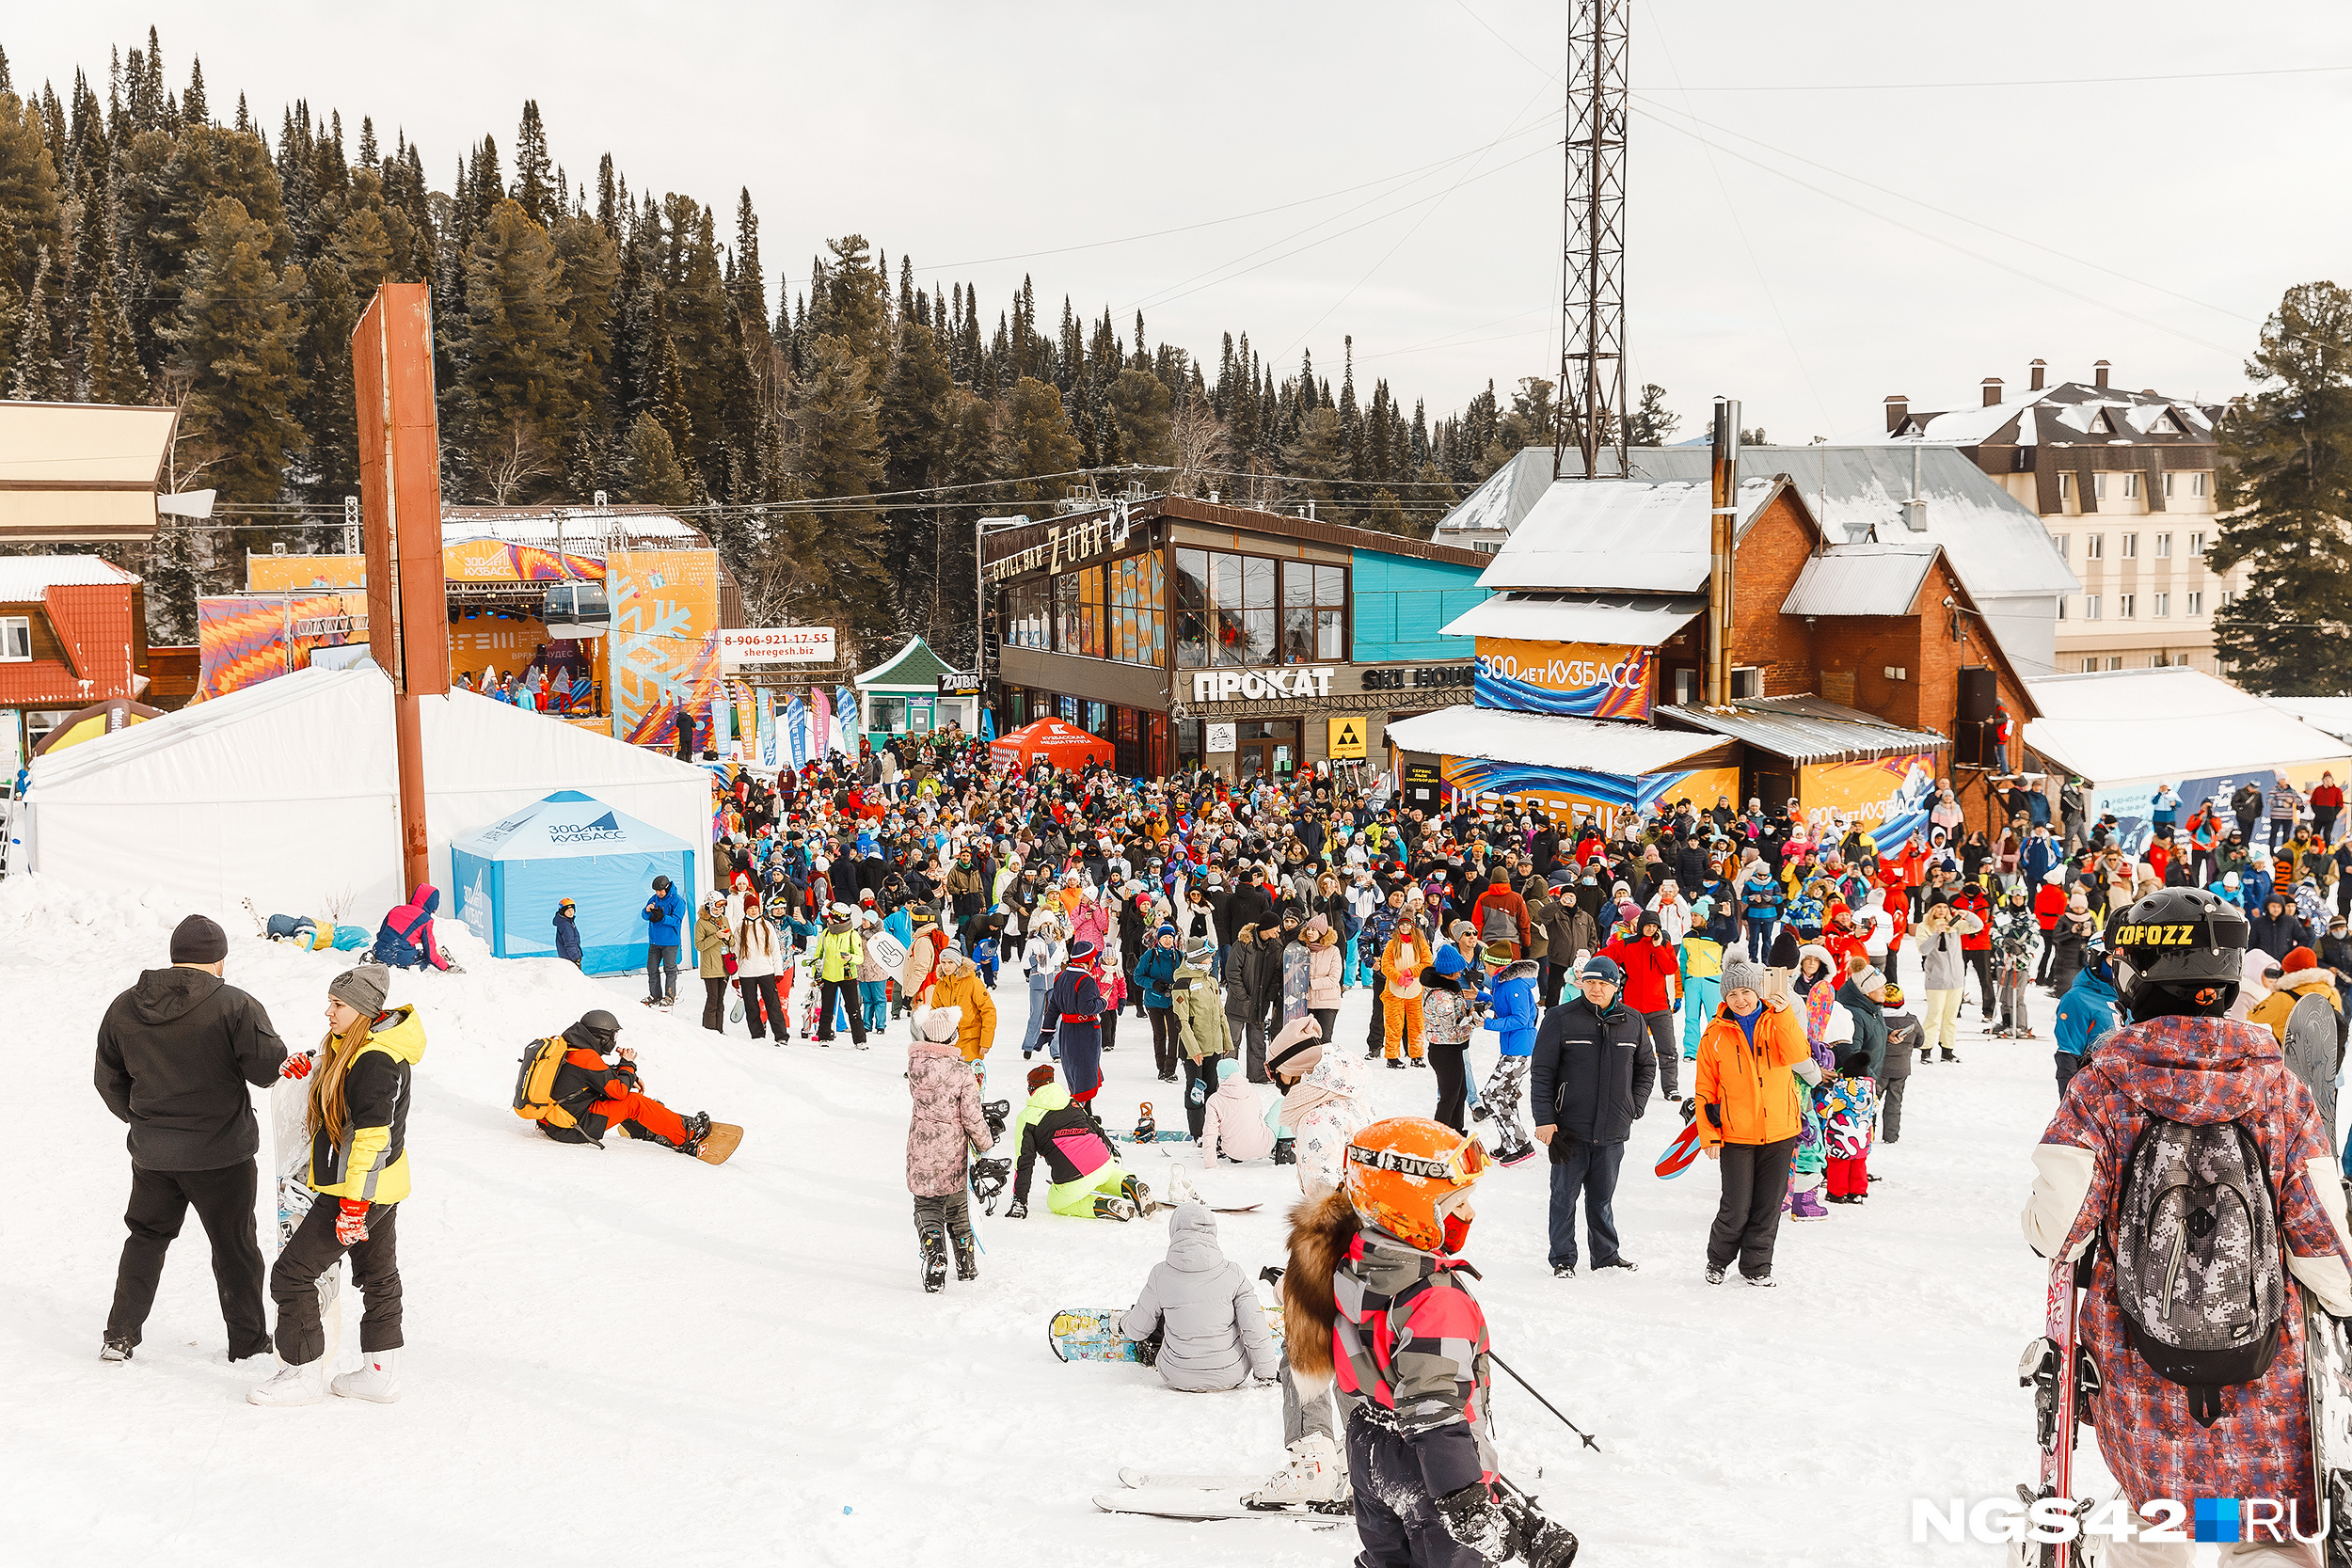 Власти Кузбасса в разгар пандемии разрешили проводить массовые мероприятия на горнолыжных курортах